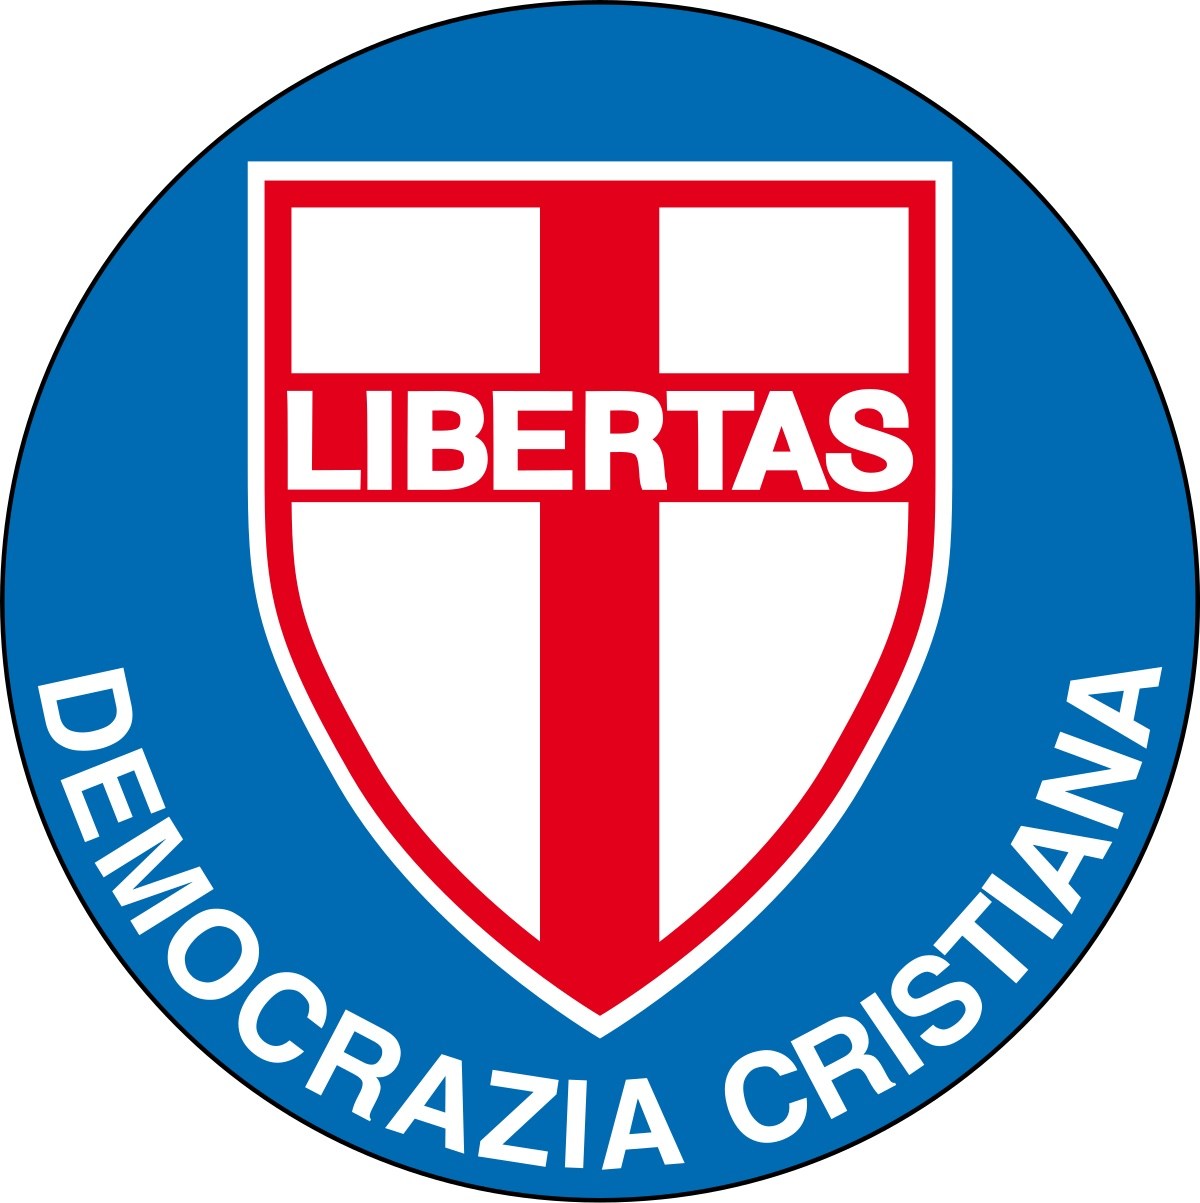 Torna la Democrazia Cristiana: il simbolo Dc sulle schede elettorali